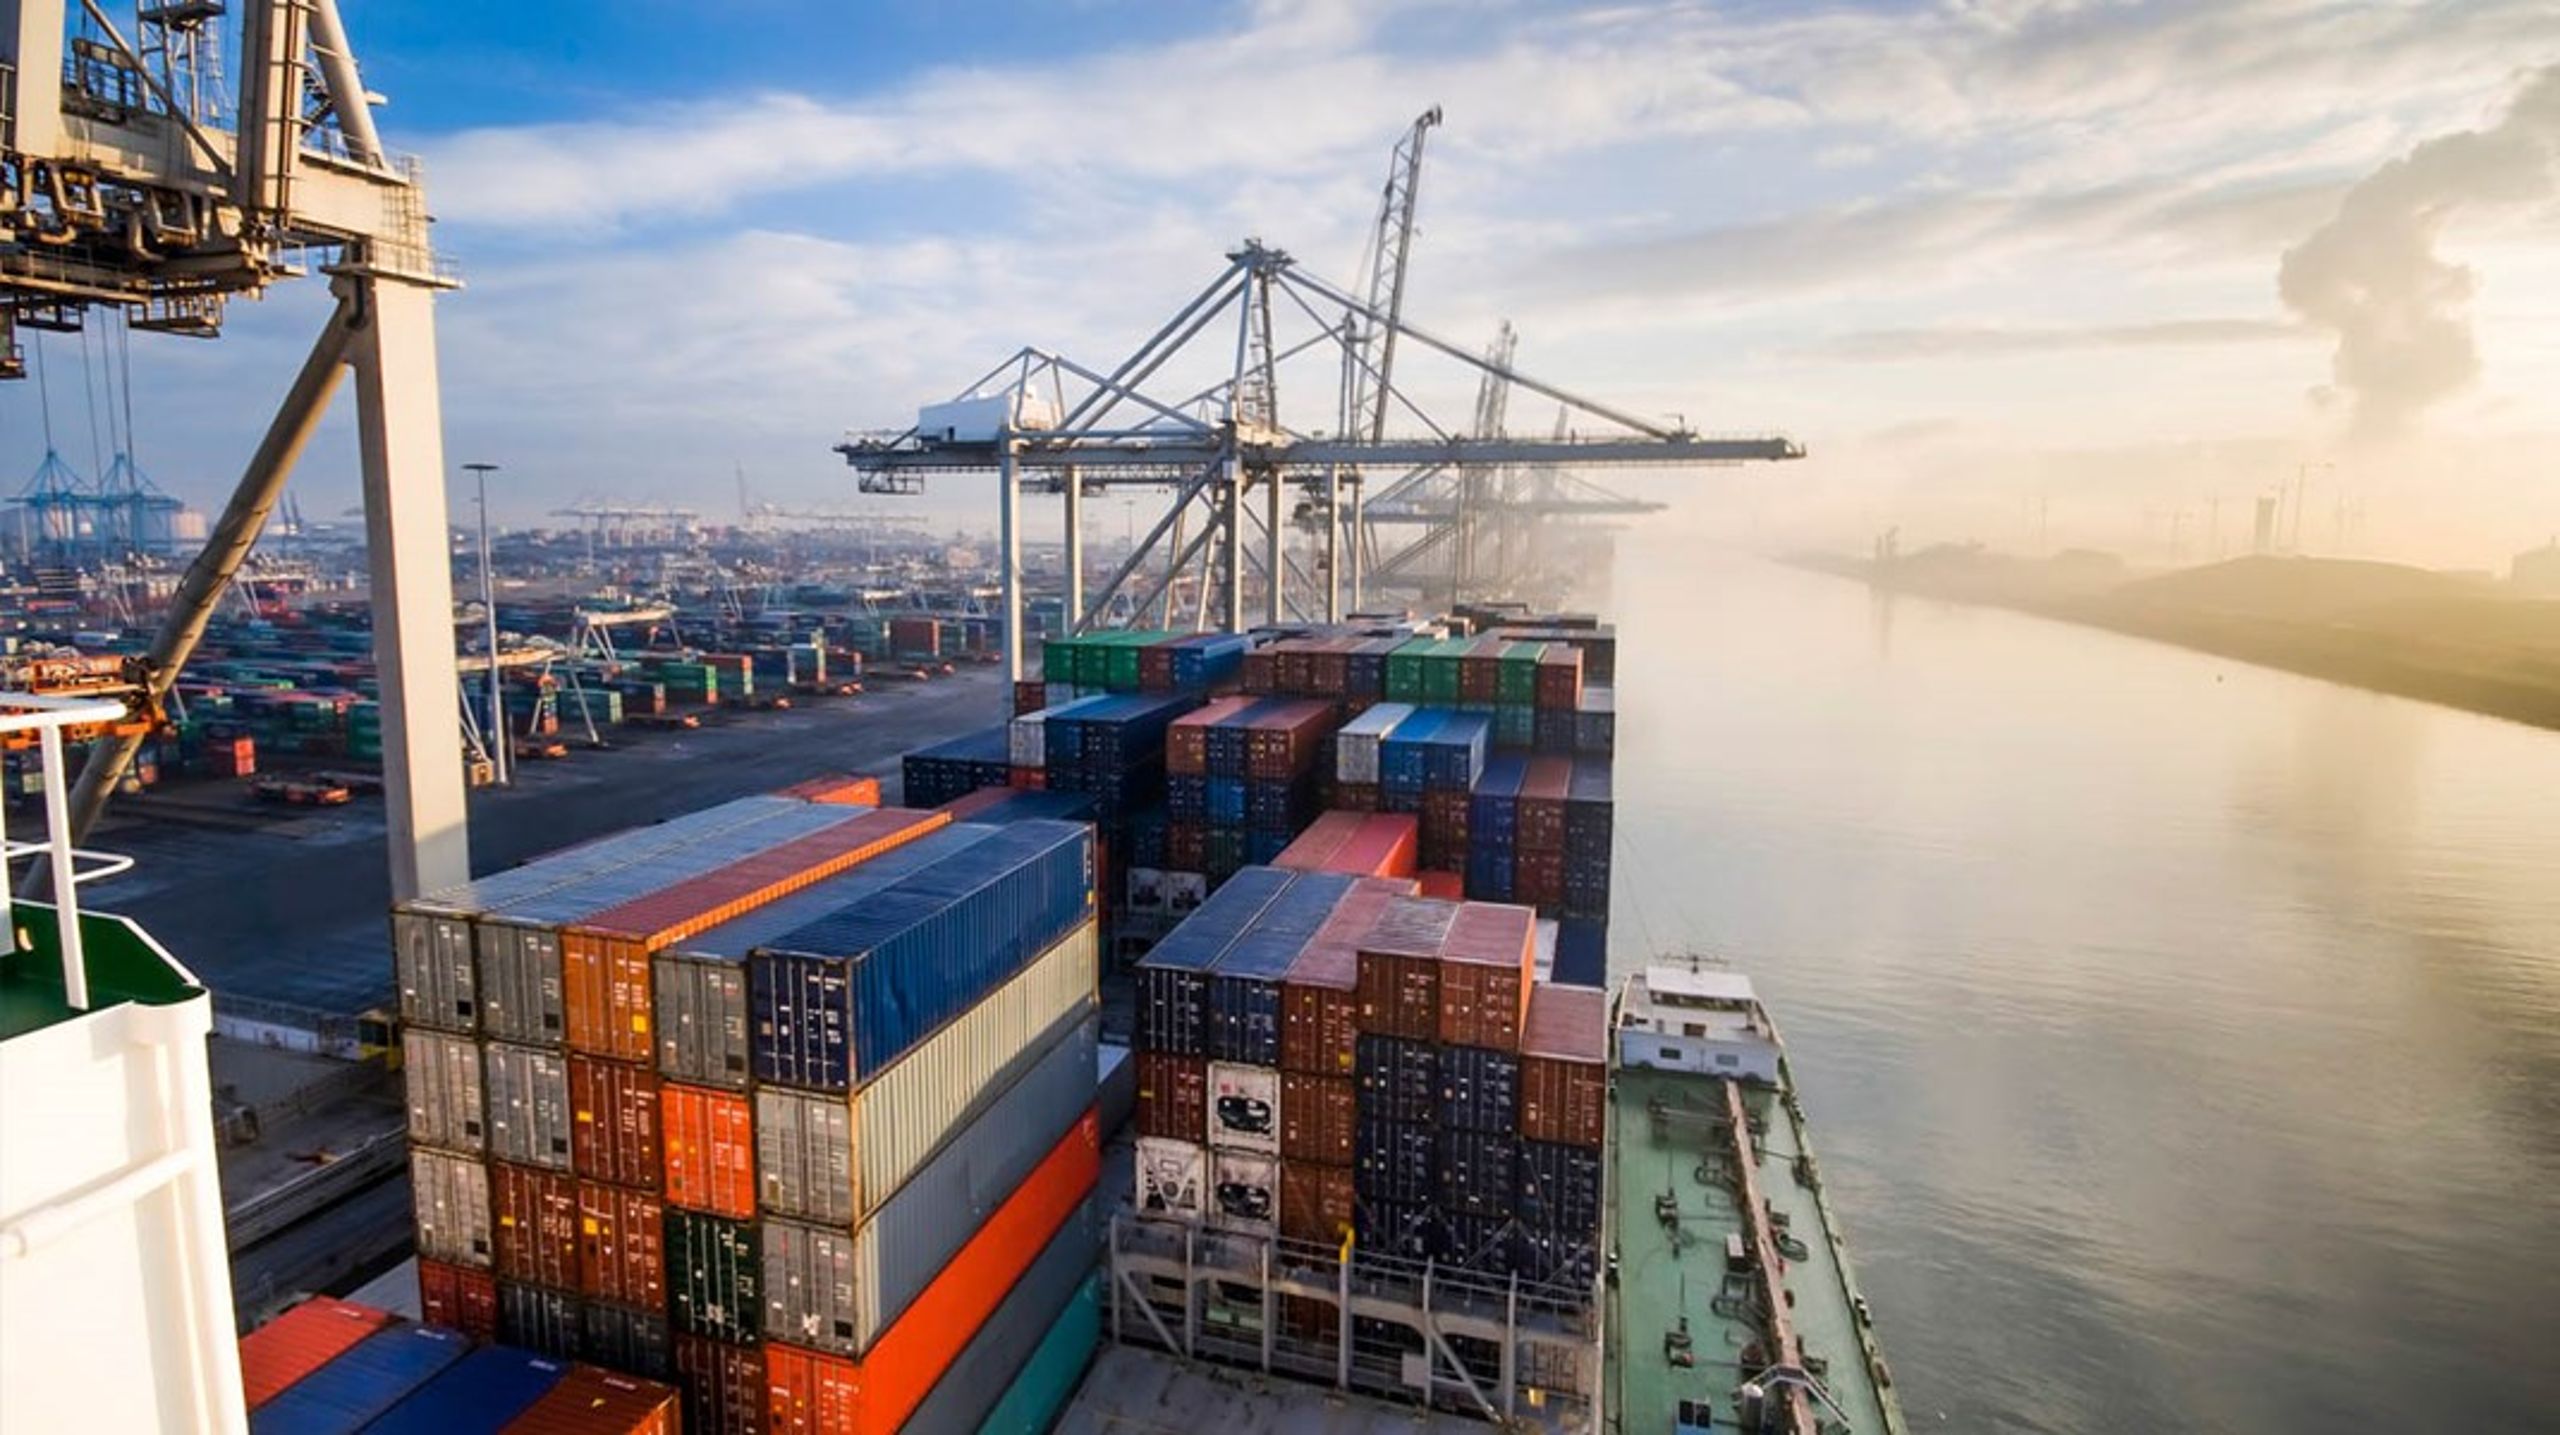 Containeren bliver ikke arbejdsløs, heller ikke i en forandret globalisering. Men det kan være, den skal vende sig til at blive flyttet mellem lidt færre hænder.